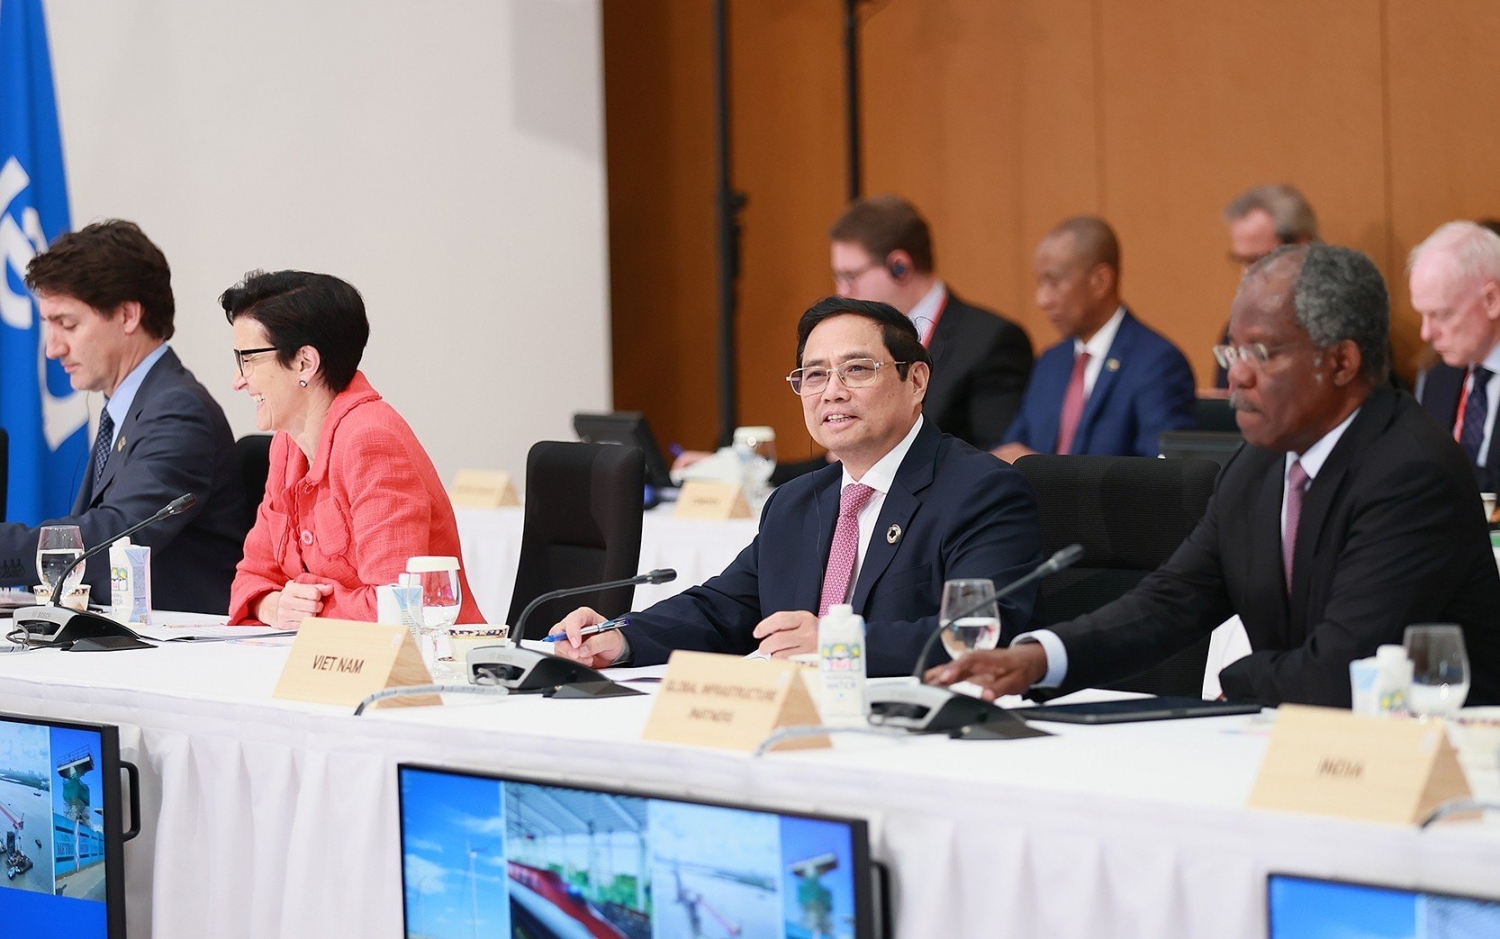 Thủ tướng đề nghị G7 hỗ trợ Việt Nam trở thành trung tâm năng lượng tái tạo